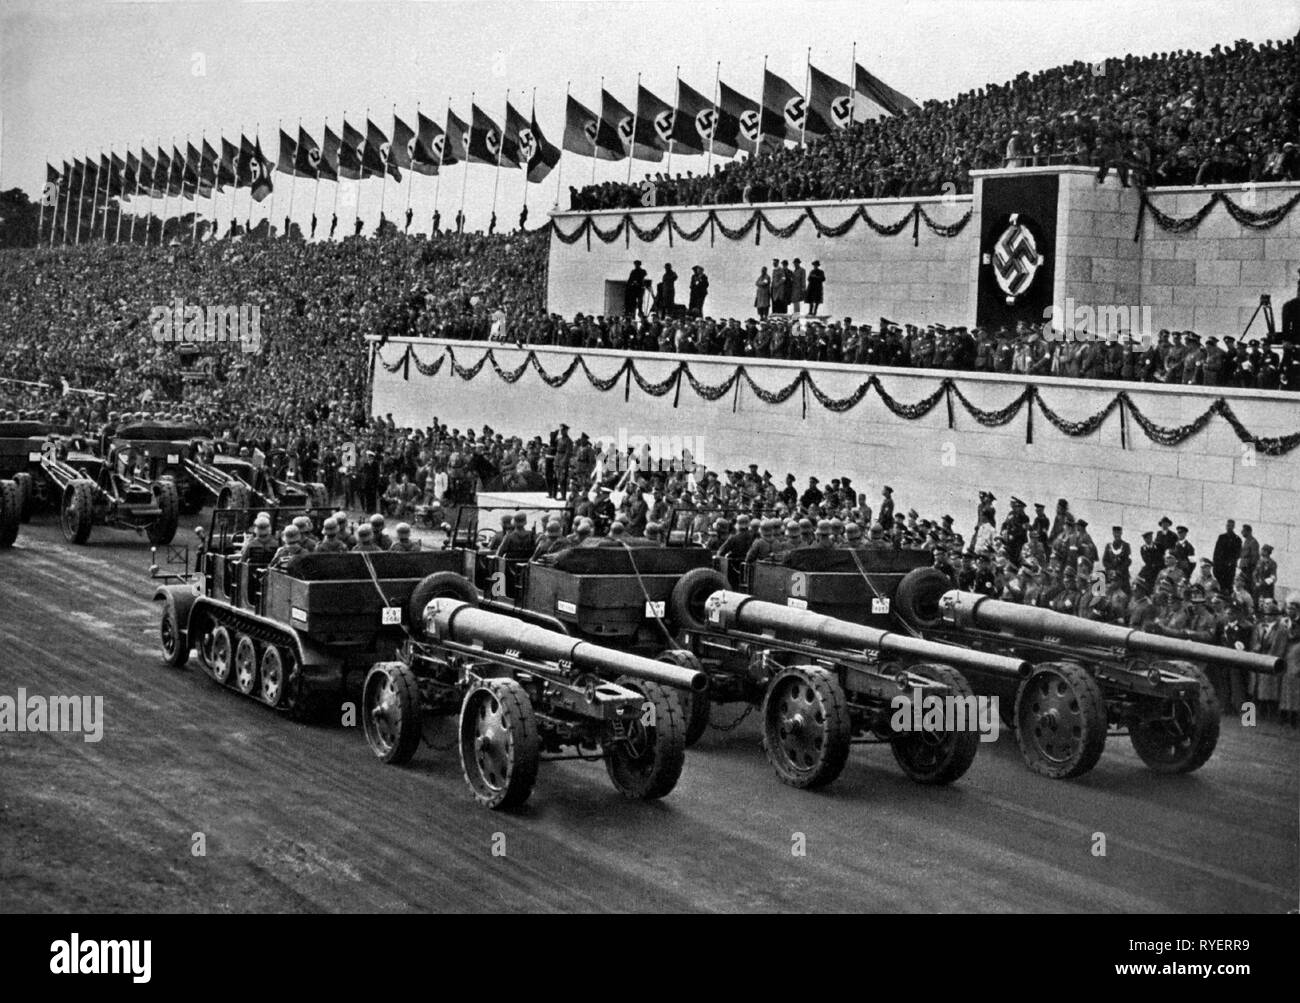 Il Nazionalsocialismo, Norimberga Rally, 'Reichsparteitag der Freiheit", Norimberga 10.-16.9.1935, giorno della Wehrmacht, marzo-passato di artiglieria pesante presso gli stand, Additional-Rights-Clearance-Info-Not-Available Foto Stock